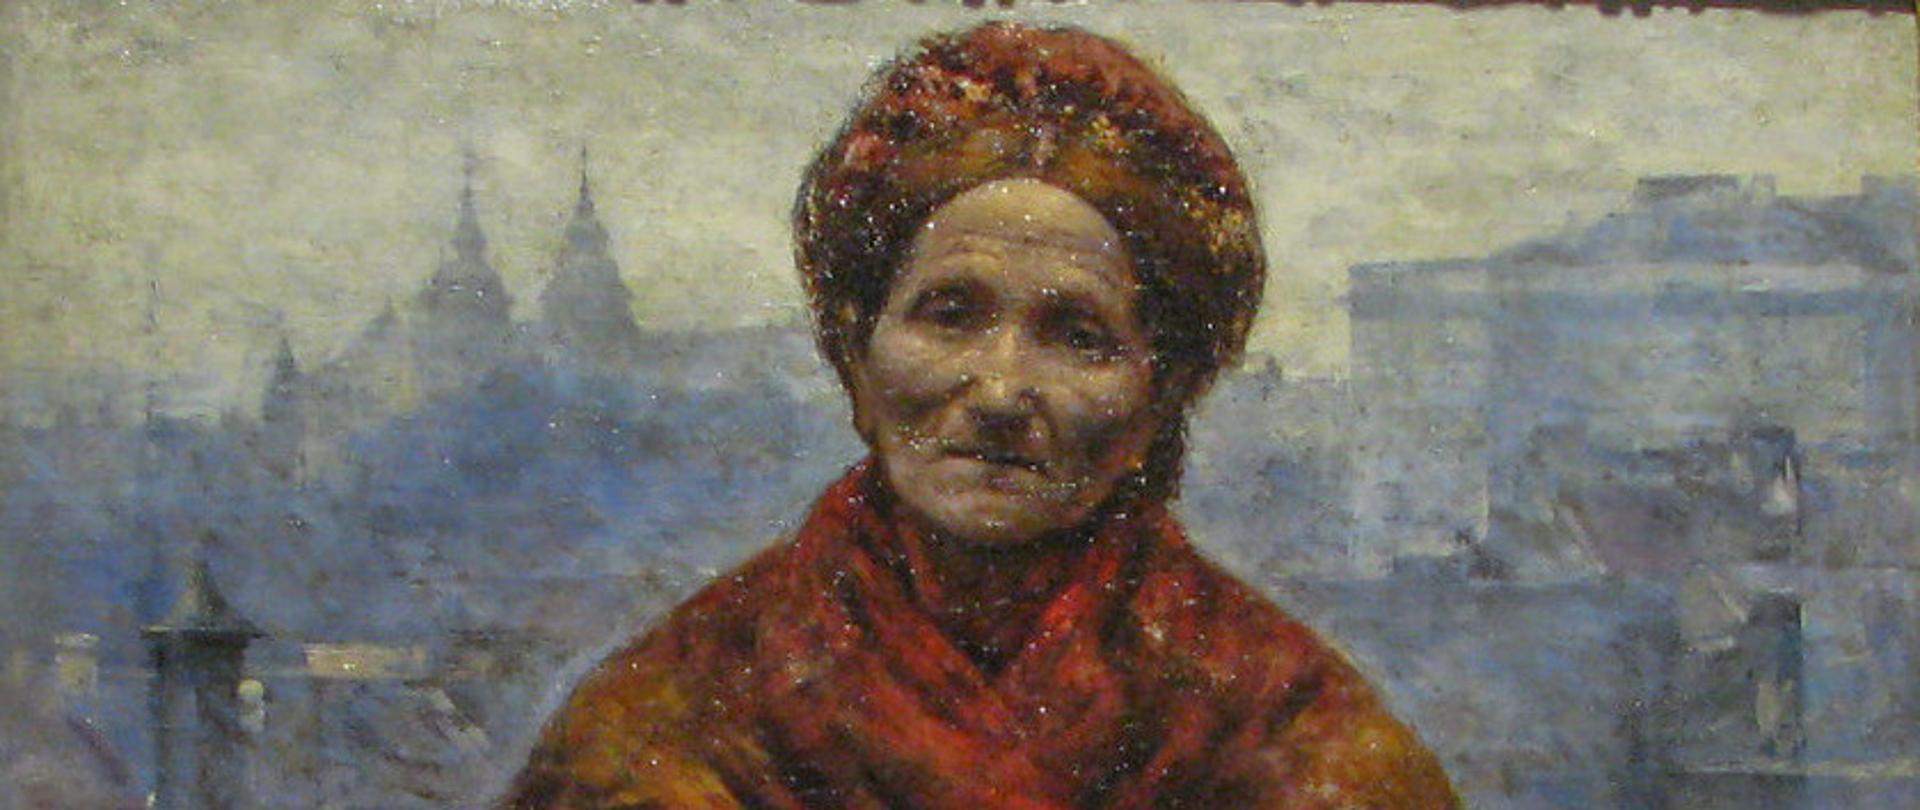 Obraz malarski przedstawiający starszą ubogą kobietę trzymającą dwa kosze, patrzącą prosto na odbiorcę obrazu